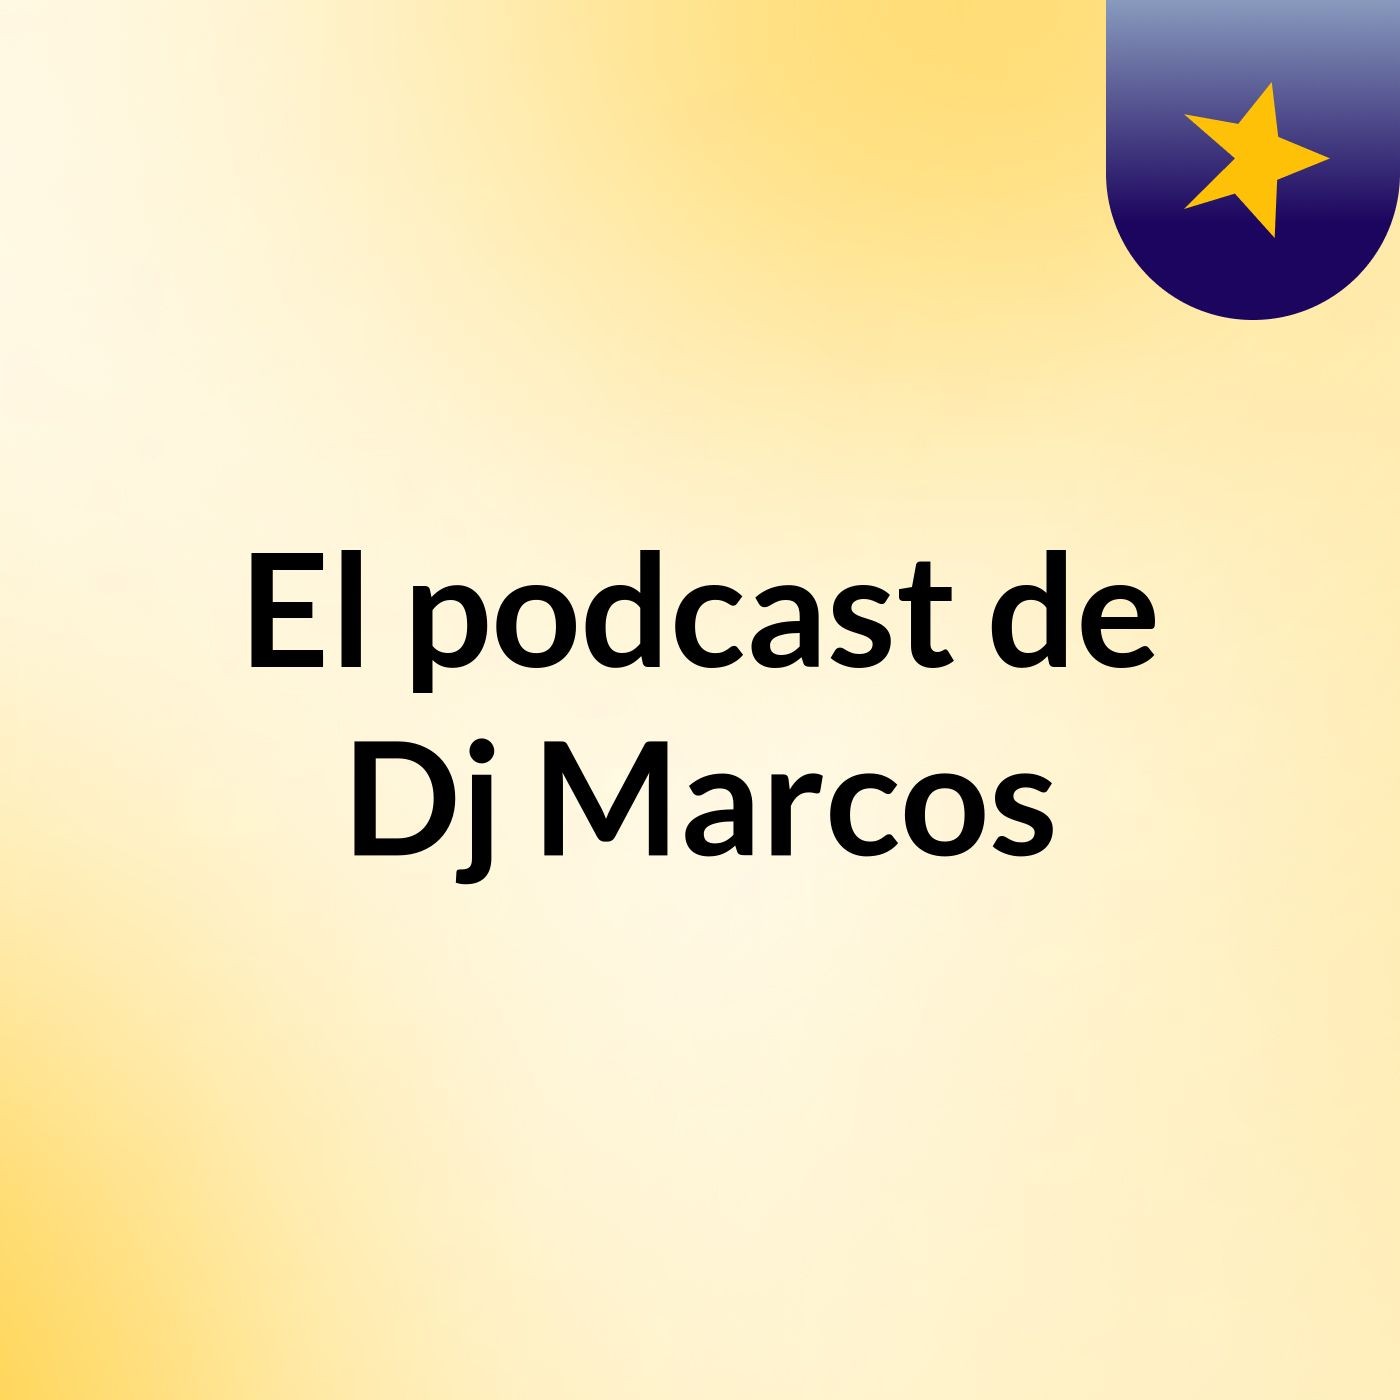 El podcast de Dj Marcos